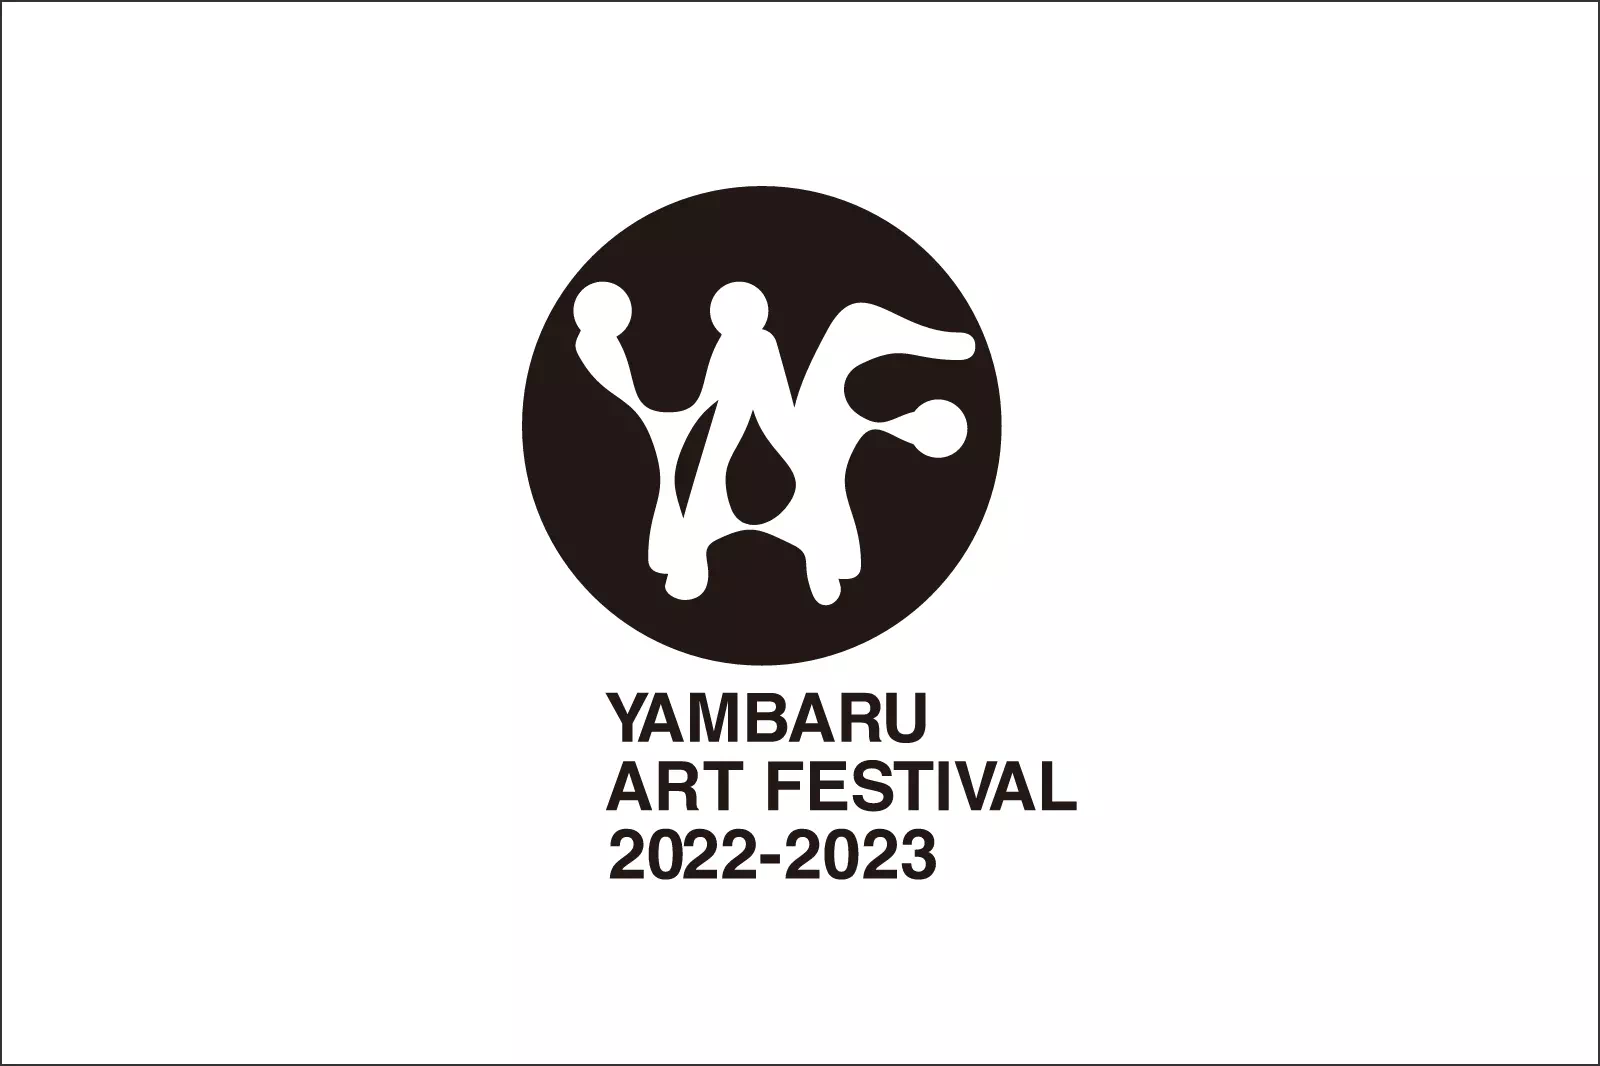 YAMBARU ART FESTIVAL 2021-2022